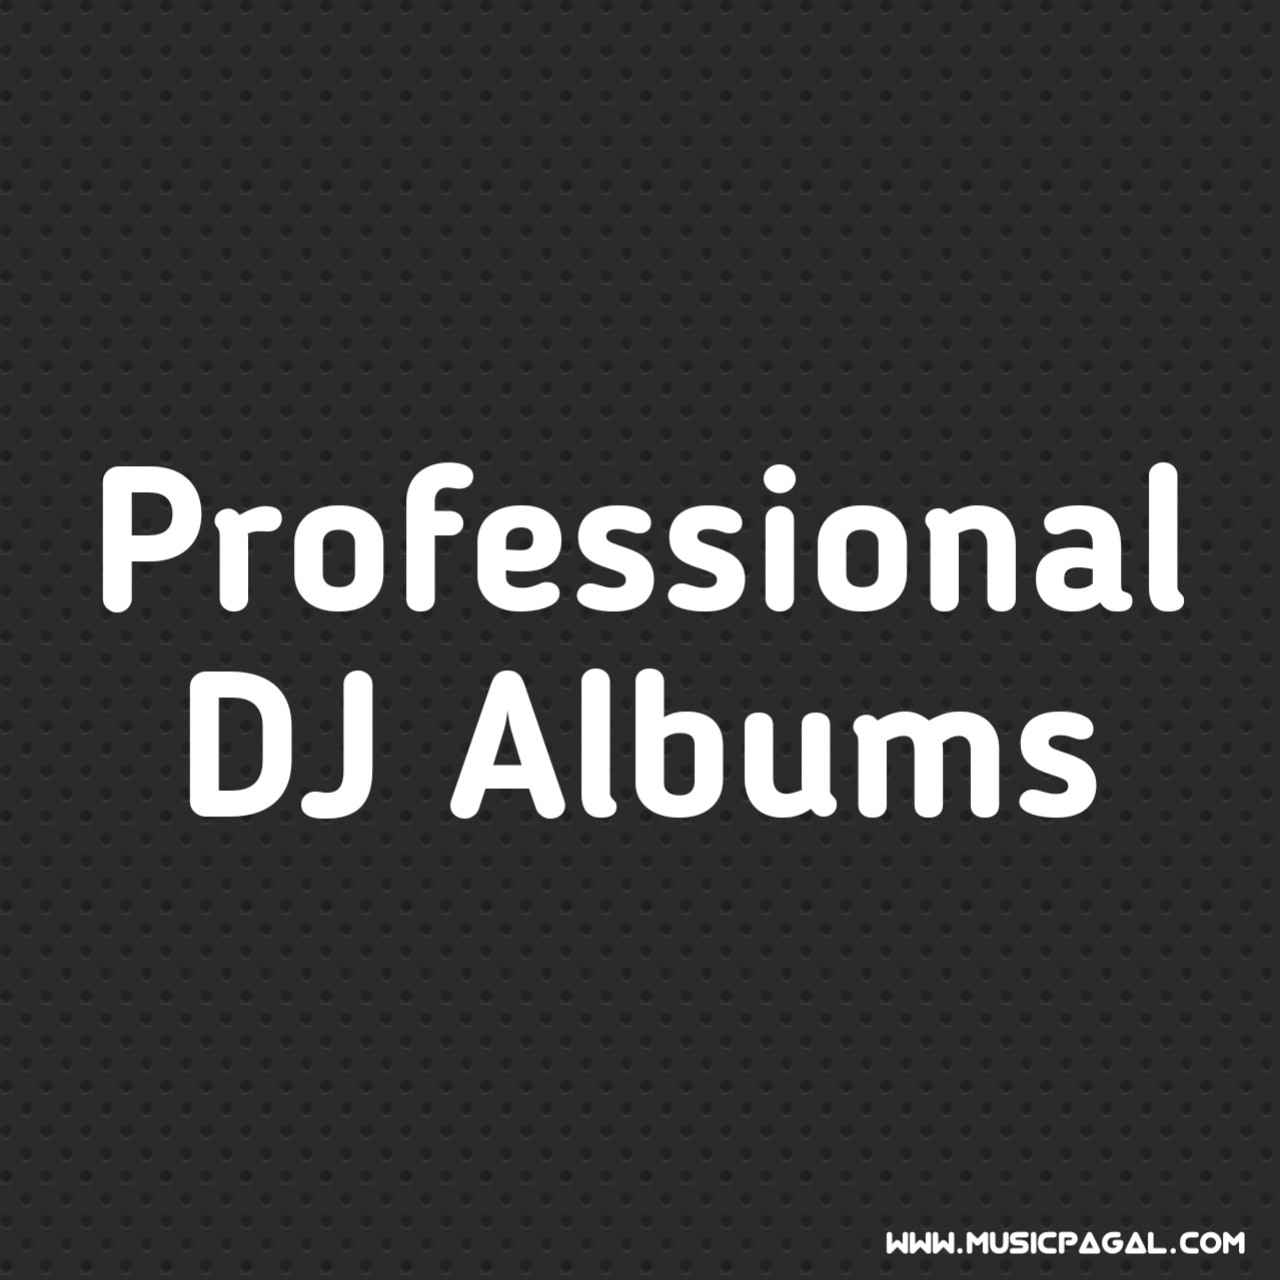 Professional DJ Album Songs